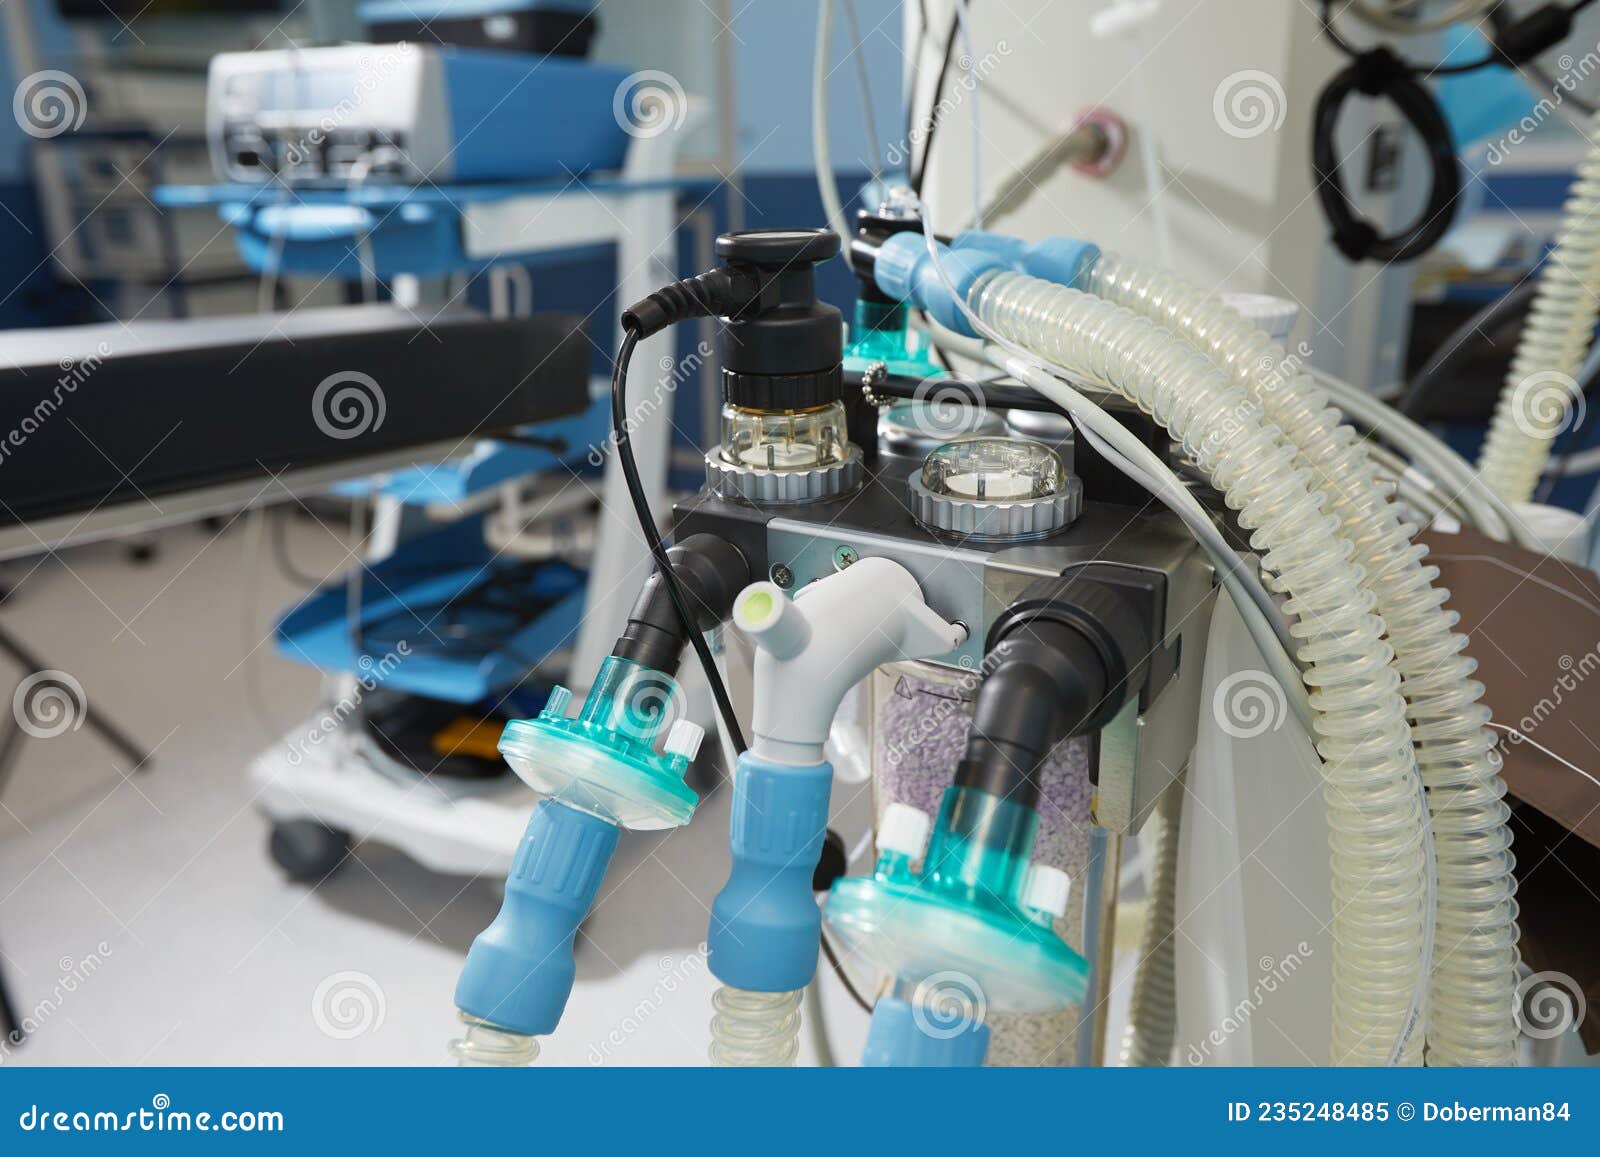 Le Concentrateur D'oxygène Médical Est Prêt à être Utilisé Devant